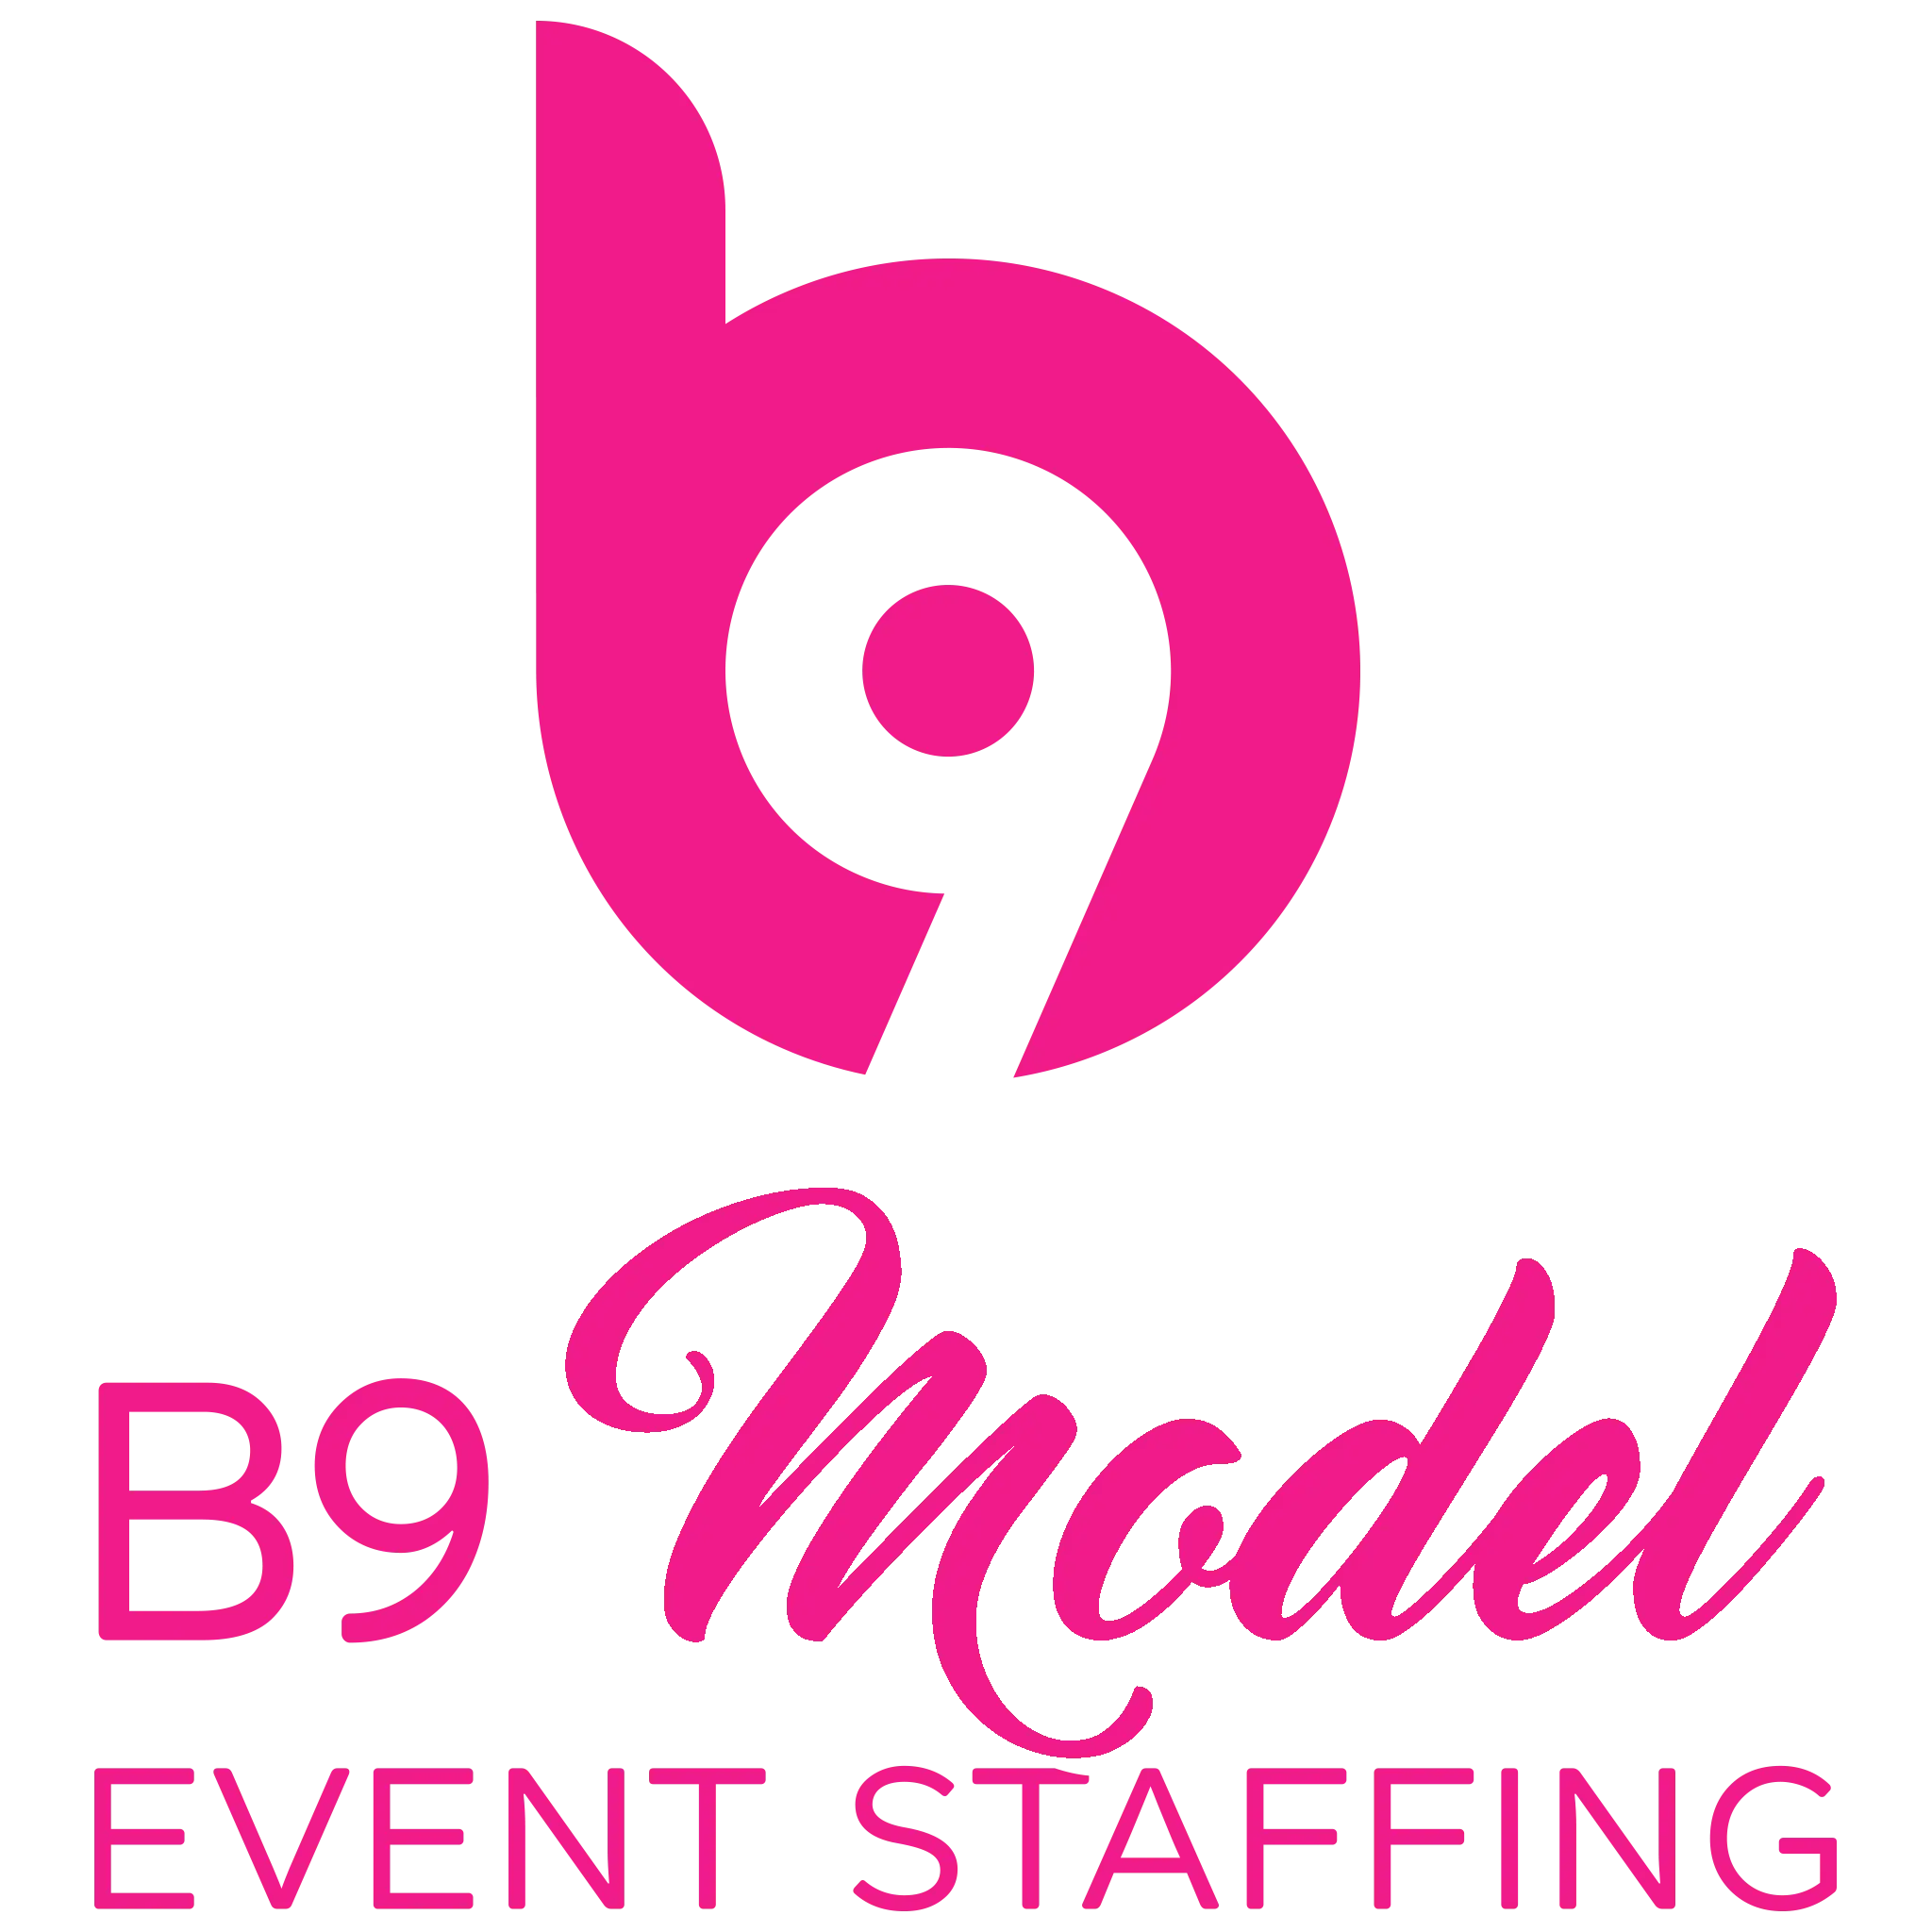 B9 Models